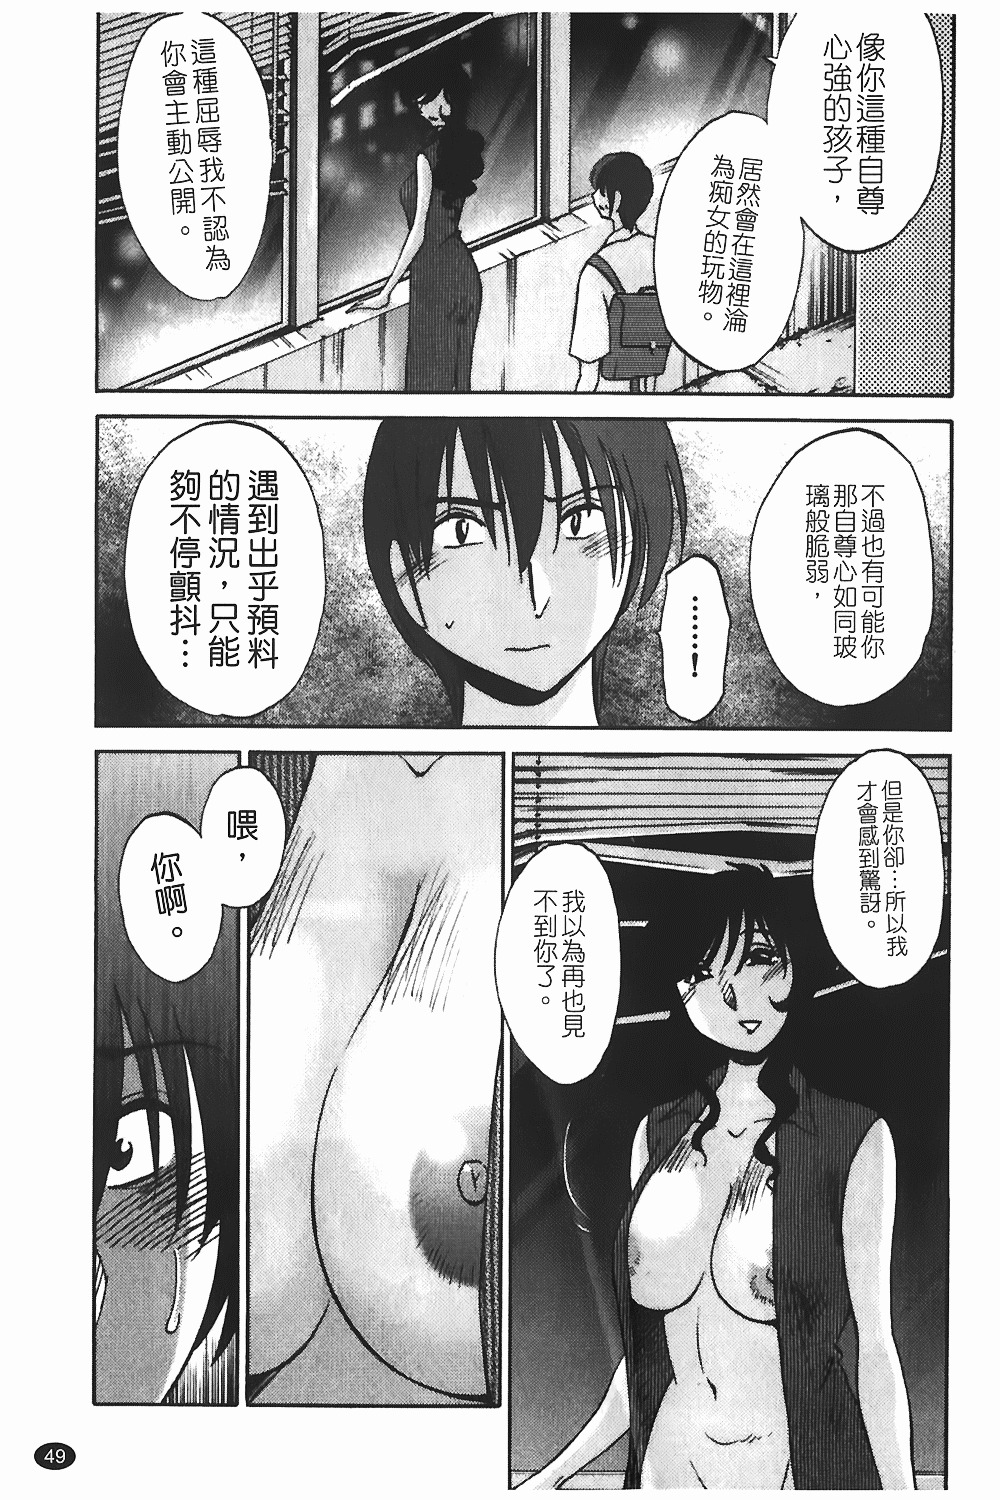 [TsuyaTsuya] Monokage no Iris 1 | 陰影中的伊利斯 1 [Chinese] page 46 full